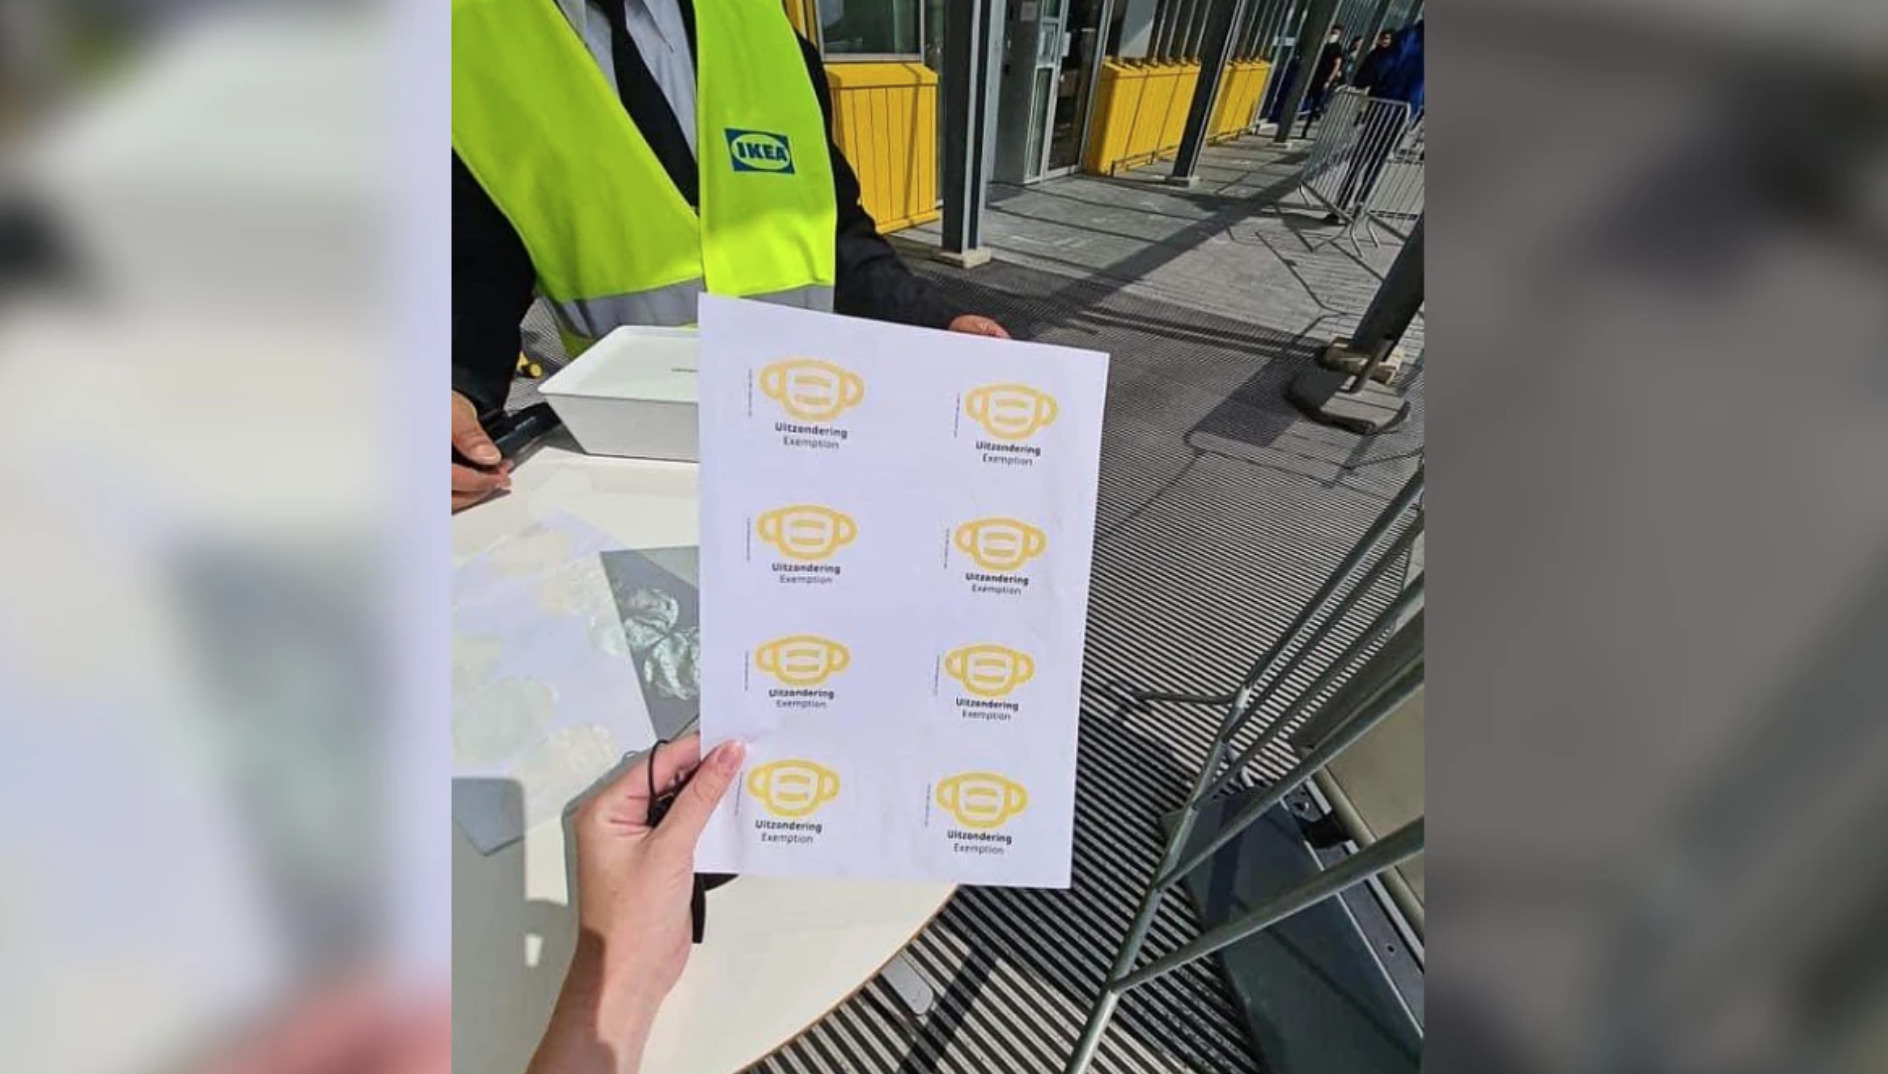 IKEA stopt met gele sticker wegens associatie met Jodenster